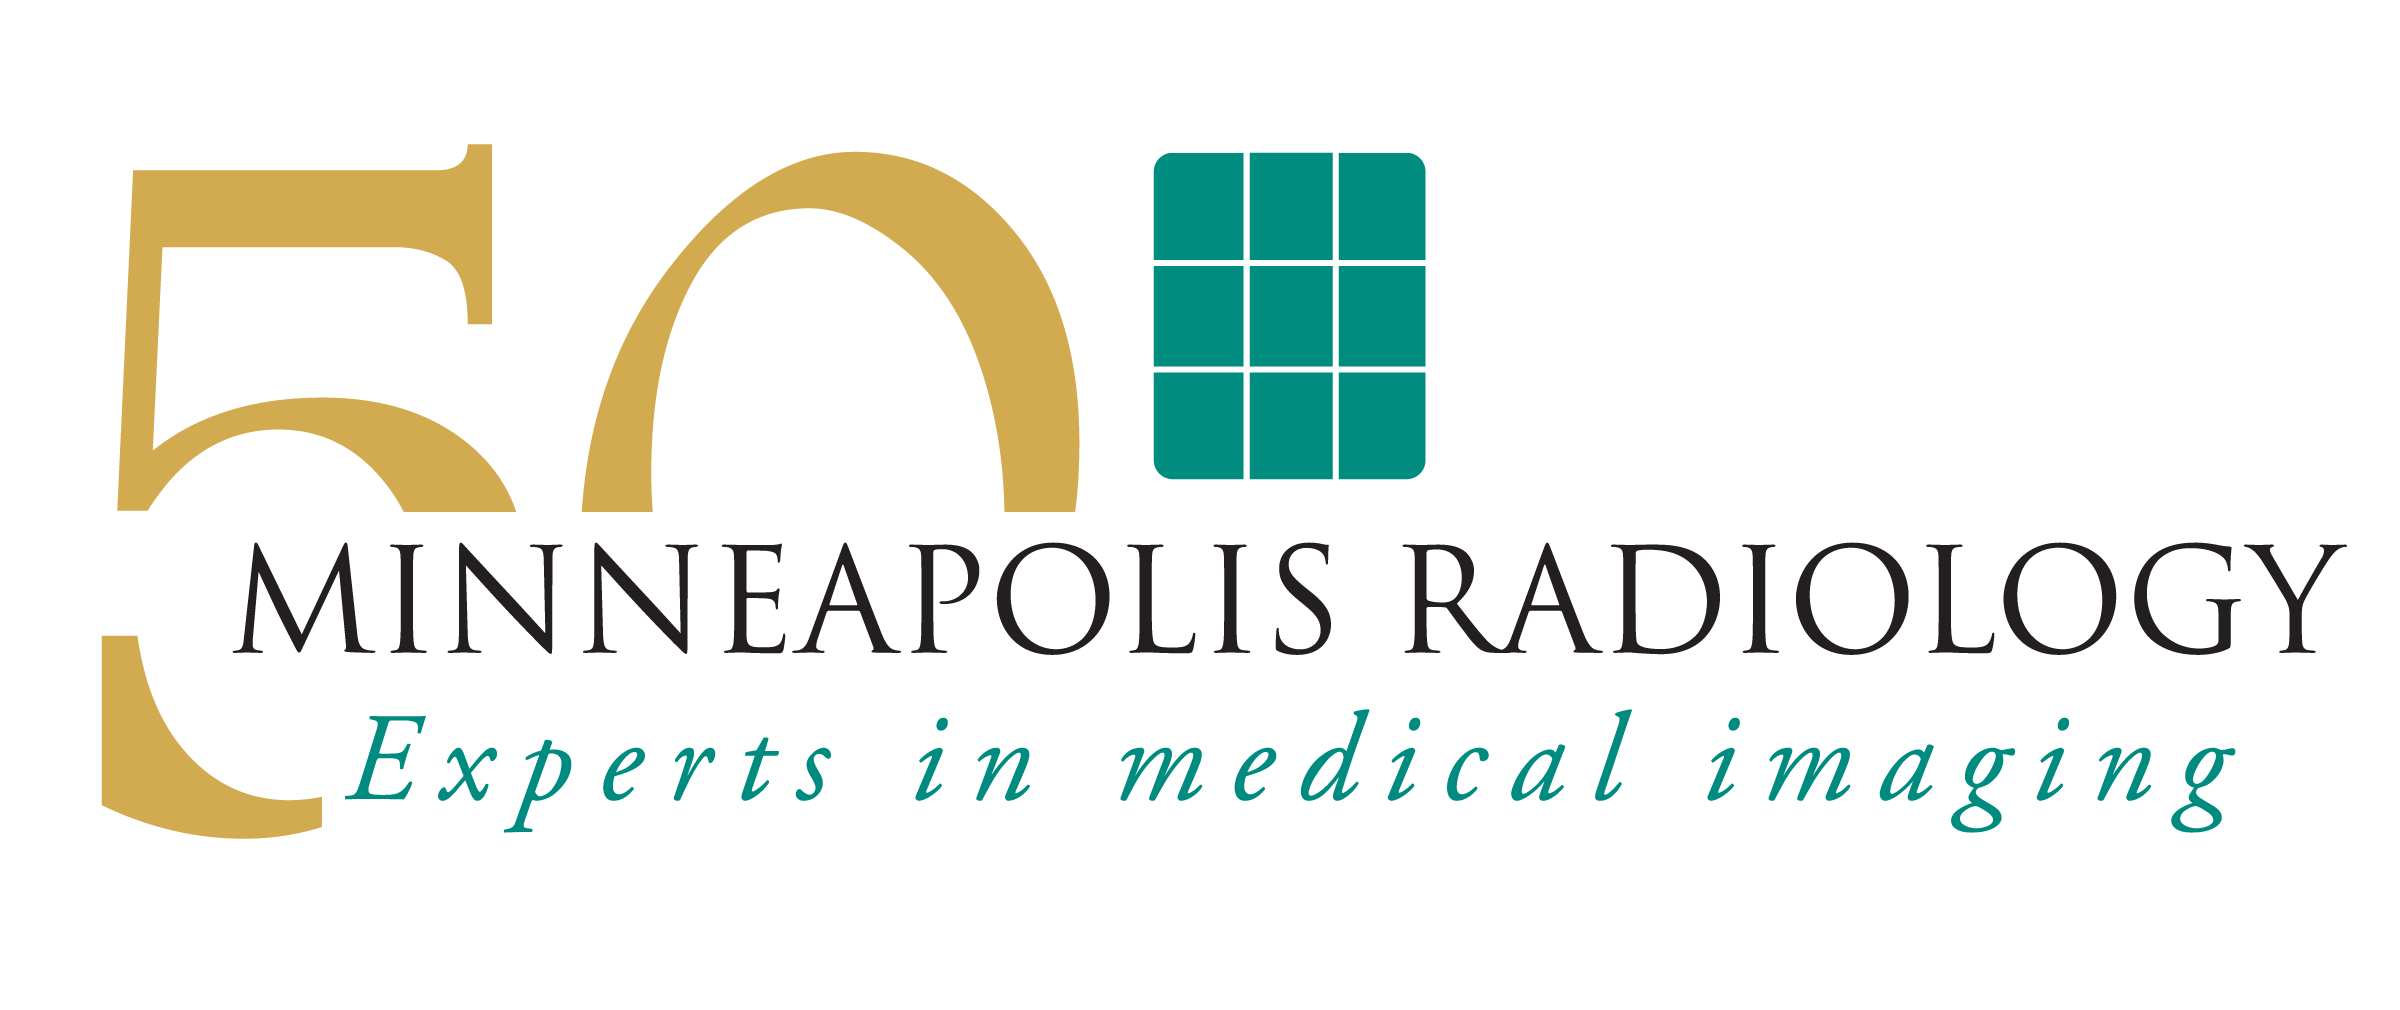 Minneapolis Radiology Company Logo